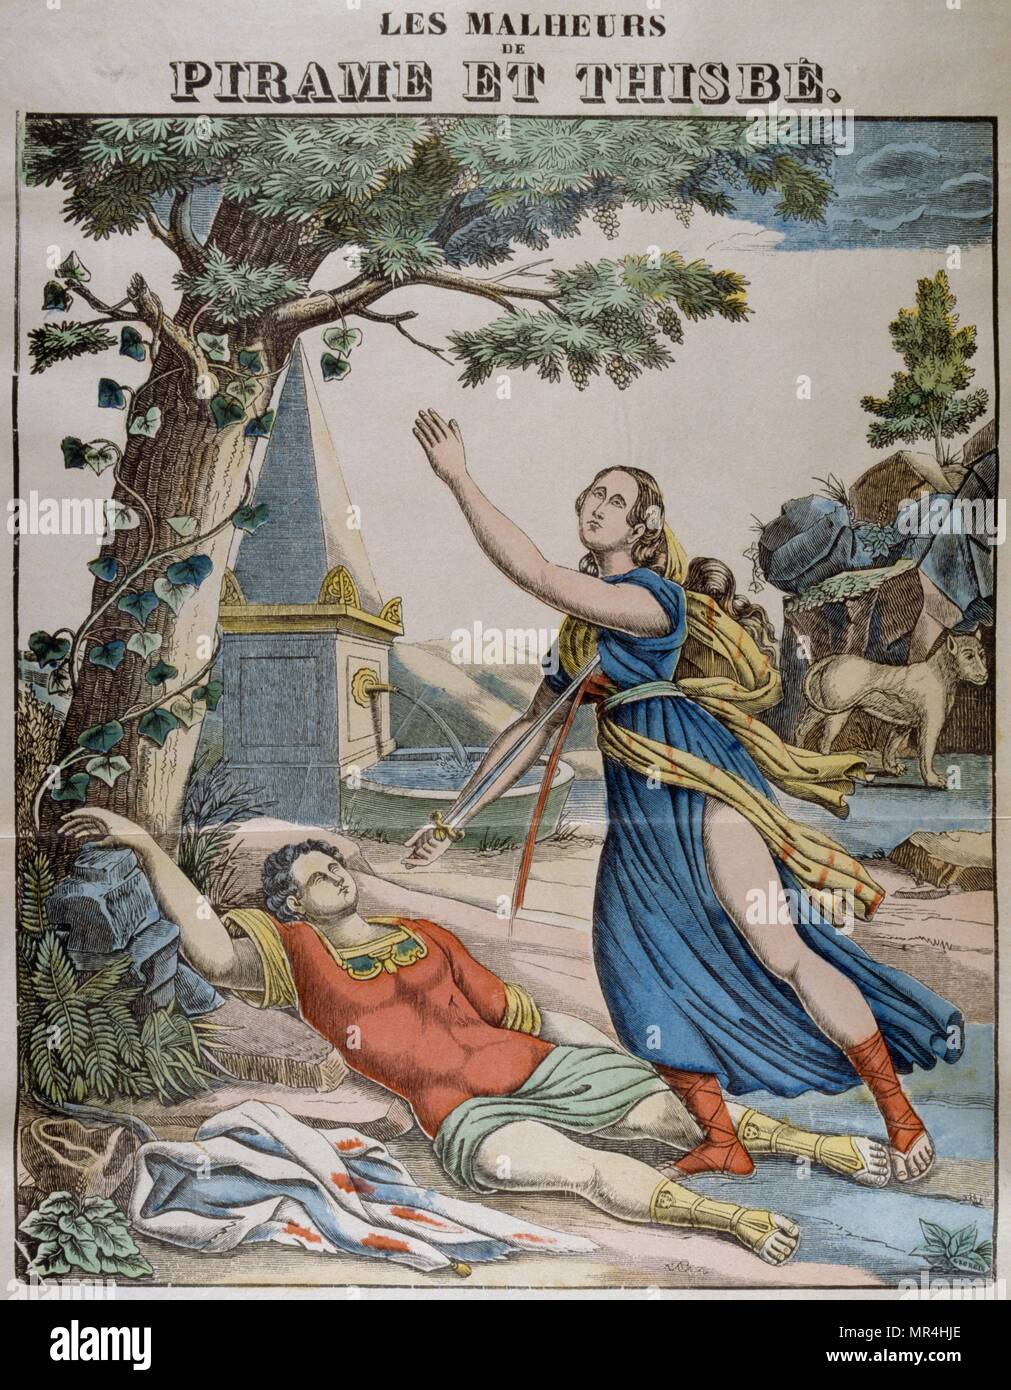 Illustration couleur montrant Pyramus et Thisbe, une paire d'amants malheureux dont l'histoire fait partie d'Ovide. Le français vers 1850 Banque D'Images